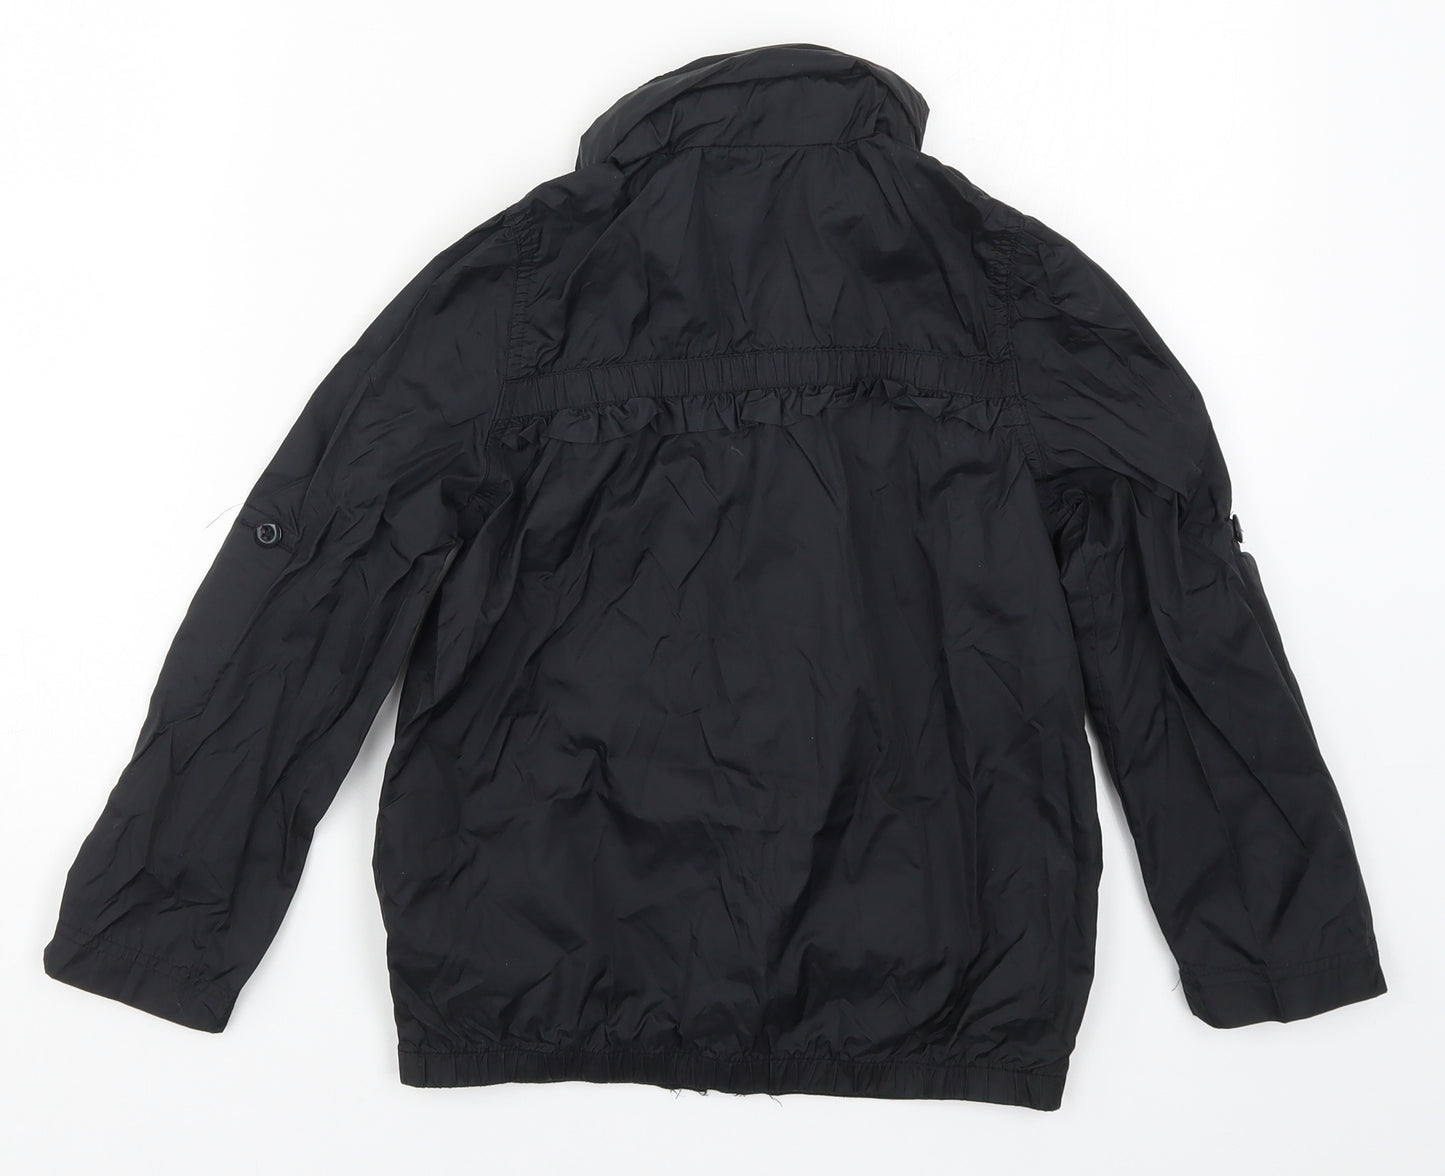 Miss Olypmus Girls Black   Basic Coat Coat Size 7-8 Years